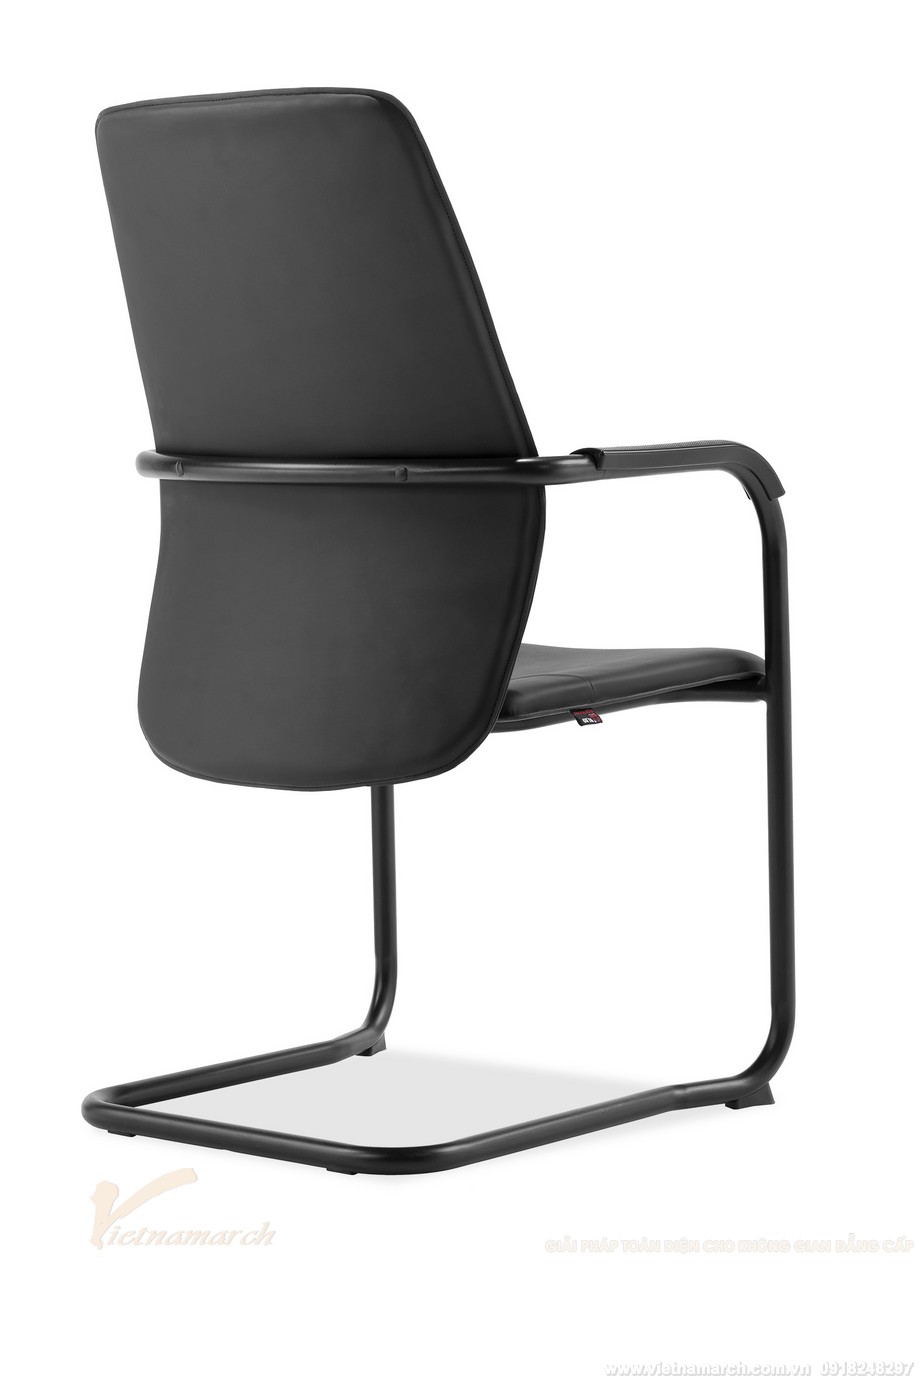 Mẫu ghế văn phòng chân quỳ cho phòng họp đơn giản hiện đại: B252BH > 